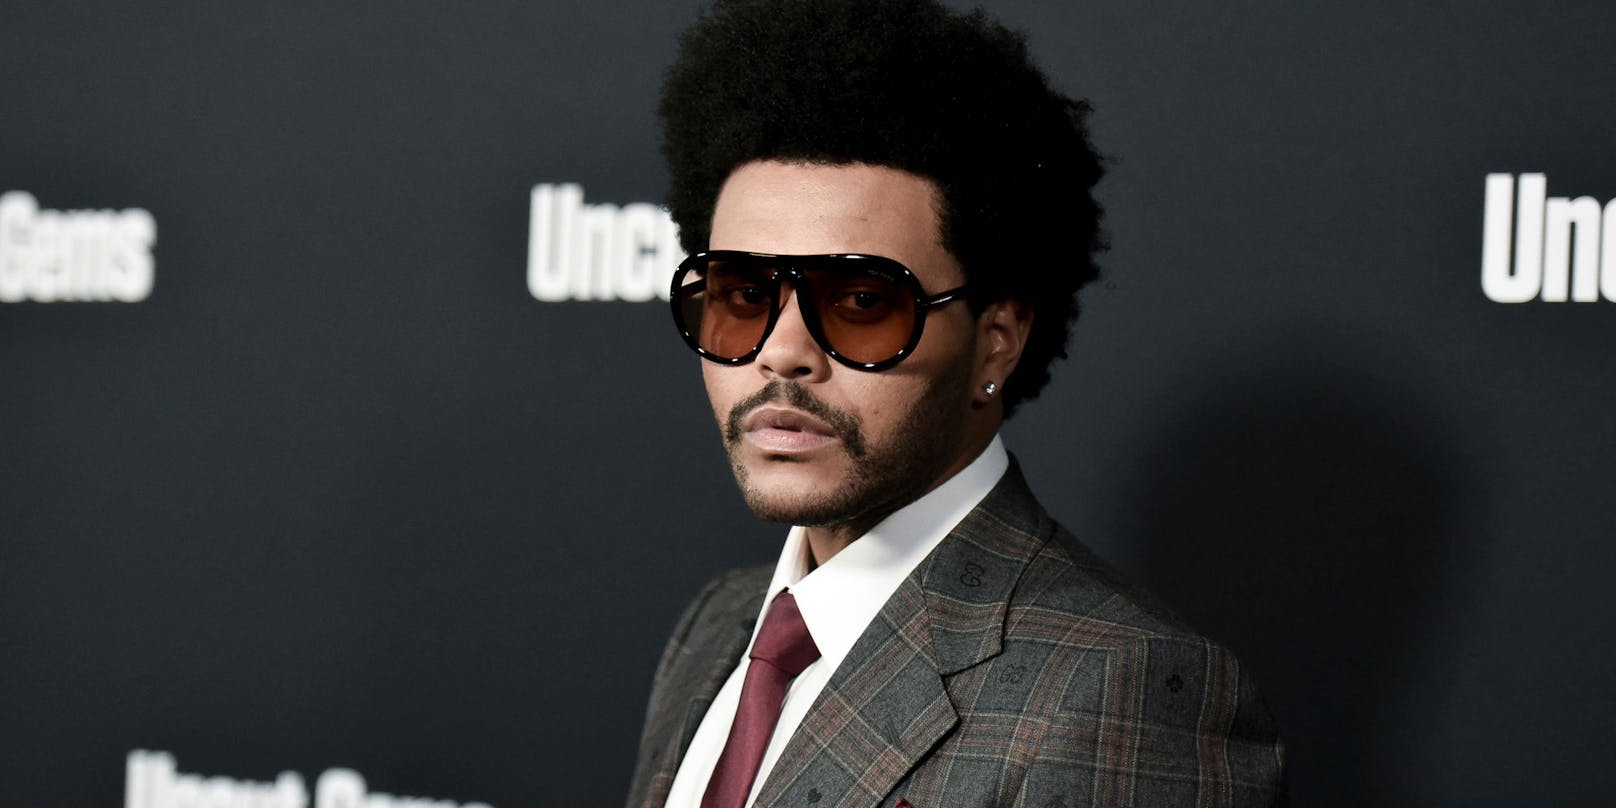 Die 63. Grammy-Verleihung findet in der Nacht auf Montag statt – <strong>The Weeknd</strong> ist nicht nominiert, obwohl sein Song "Blinding Lights" einer der größten Hits der Popmusikgeschichte ist.